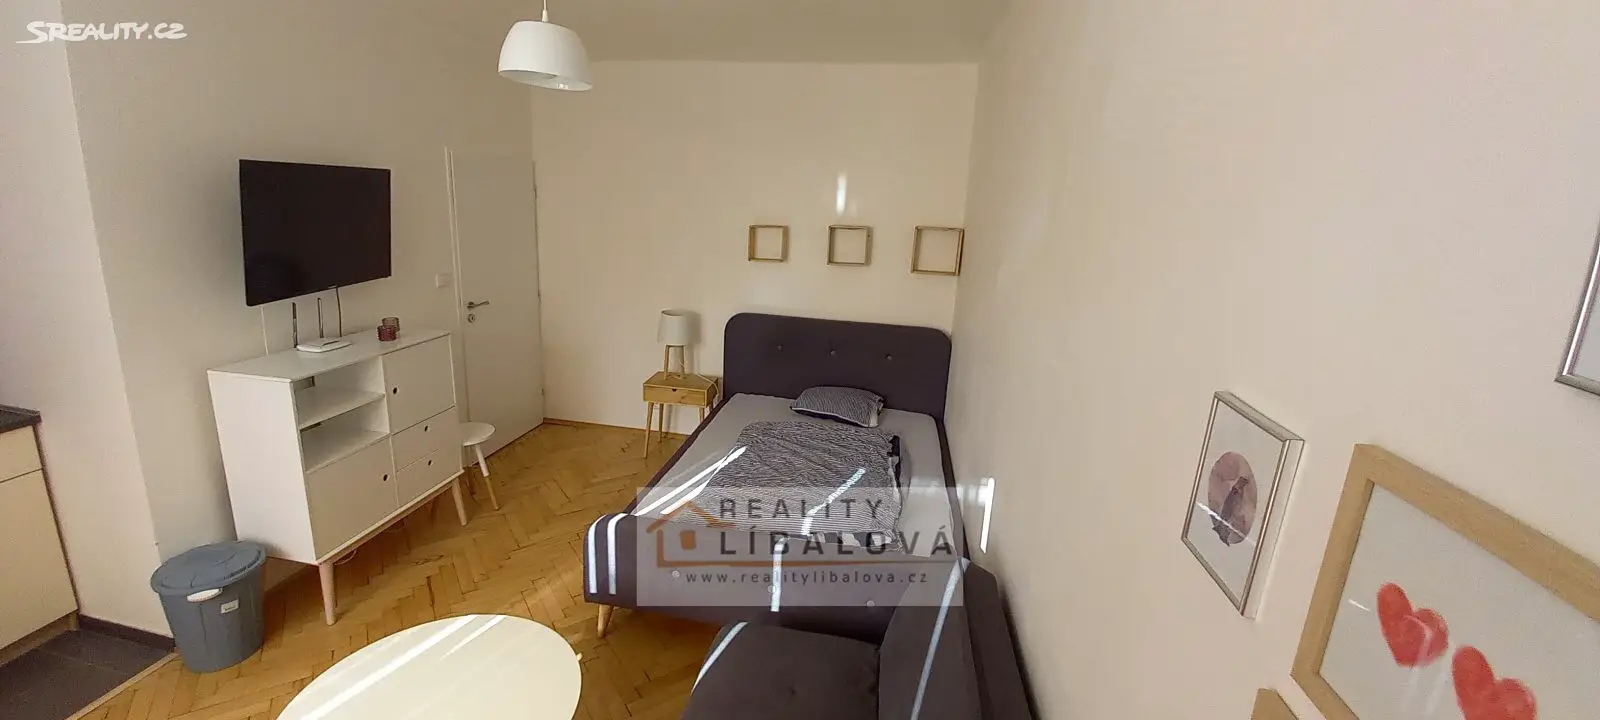 Pronájem bytu 1+kk 22 m², Růžový palouček, Ústí nad Labem - Ústí nad Labem-centrum